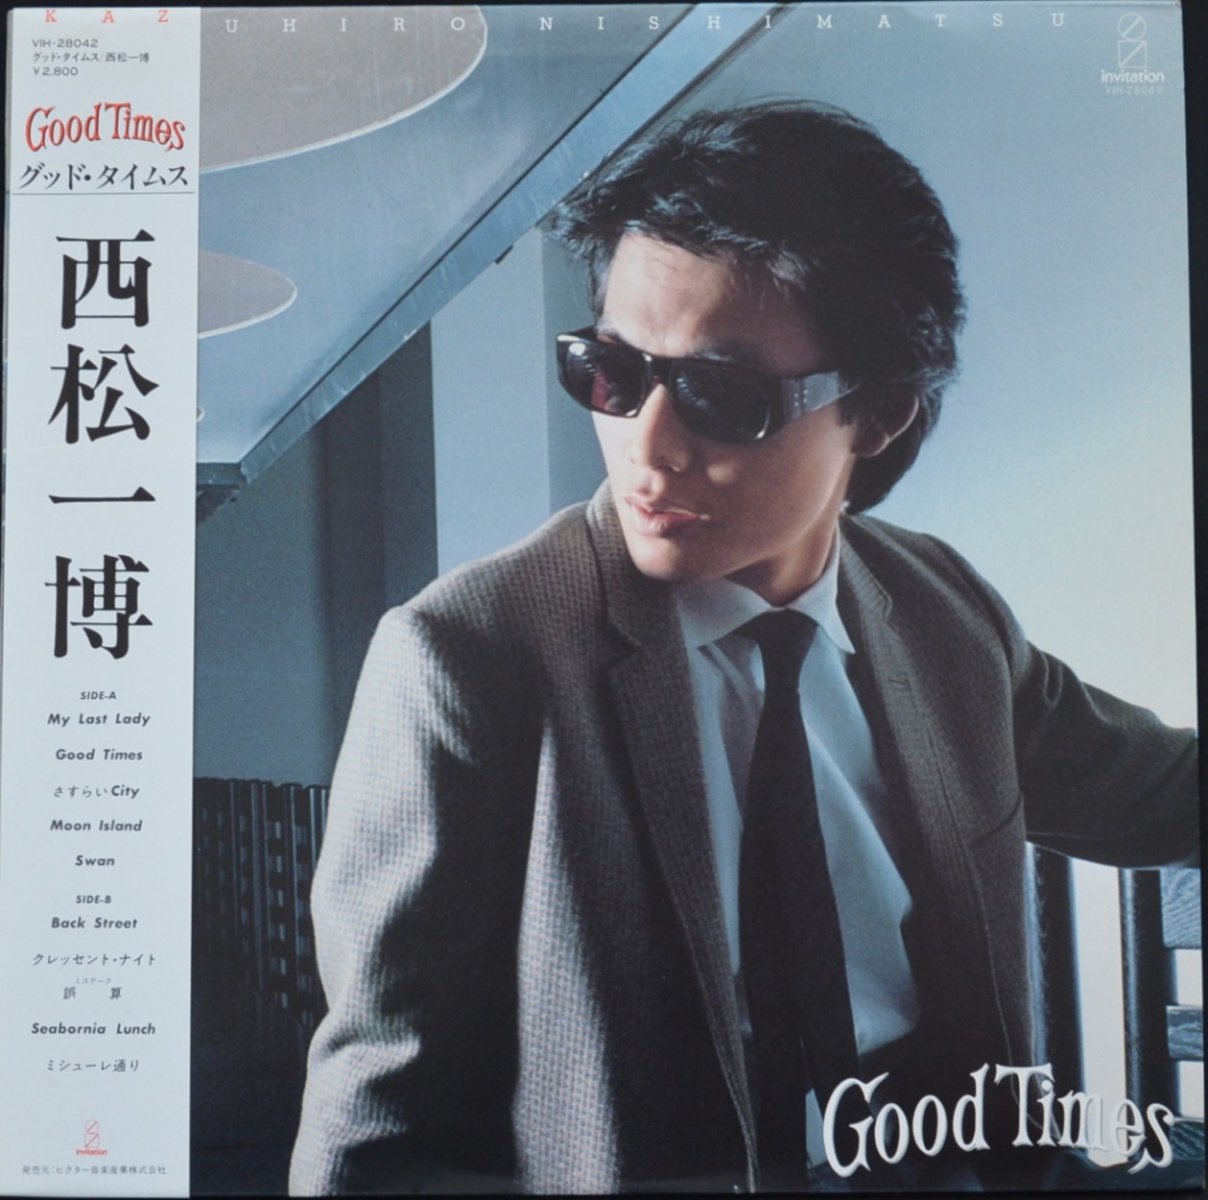 西松一博 KAZUHIRO NISHIMATSU / グッド・タイムス GOOD TIMES (LP